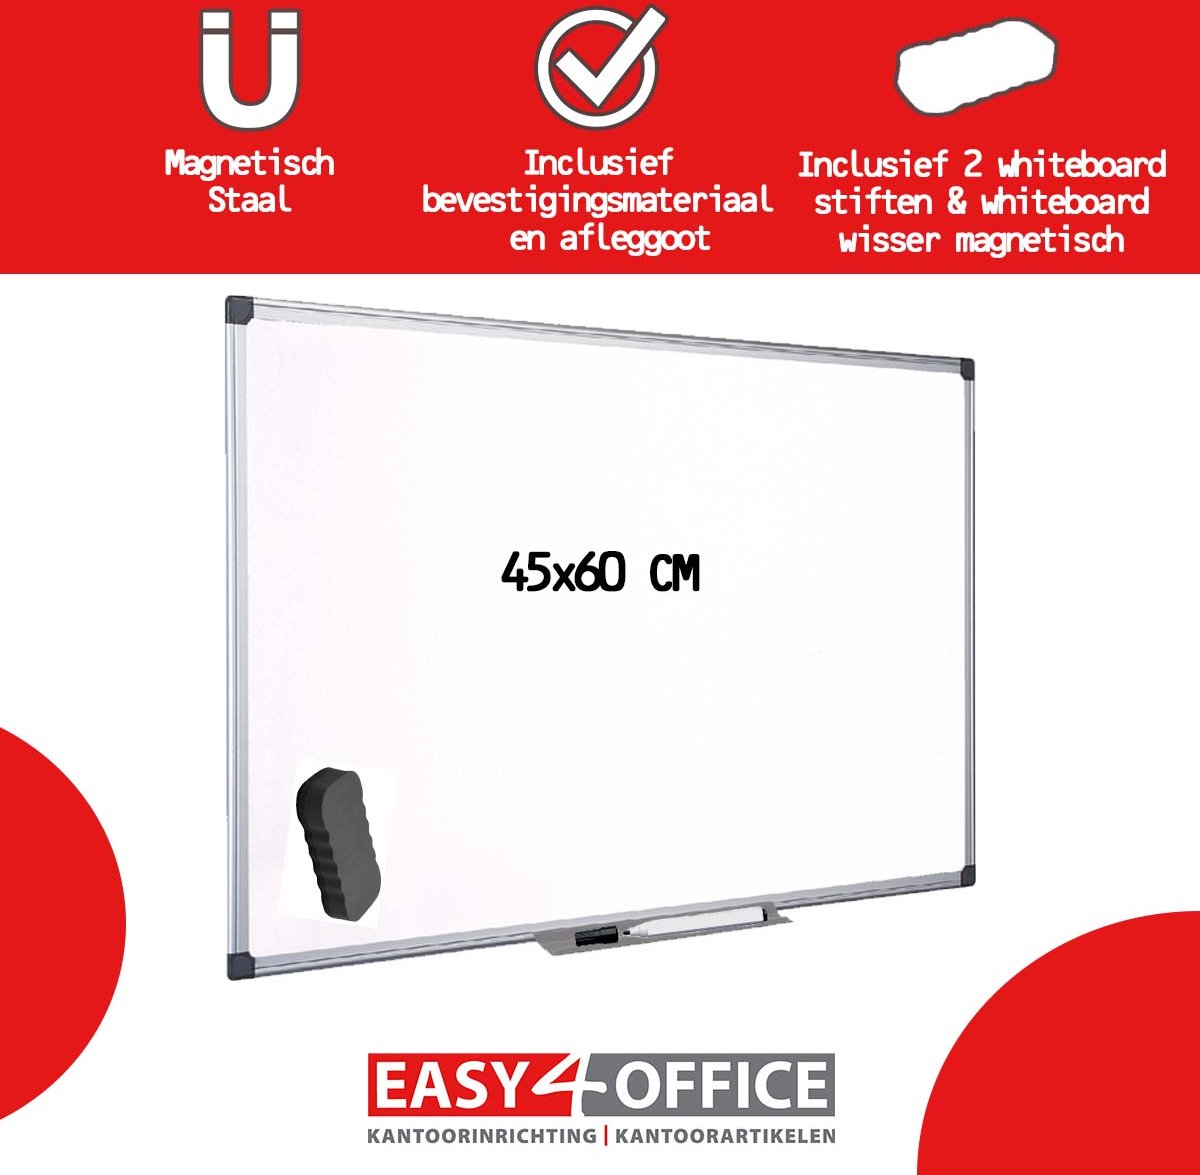 Easy4Office Whiteboard 45x60cm magnetisch gelakt staal, inclusief 2 whiteboardstiften en een magnetische whiteboardwisser